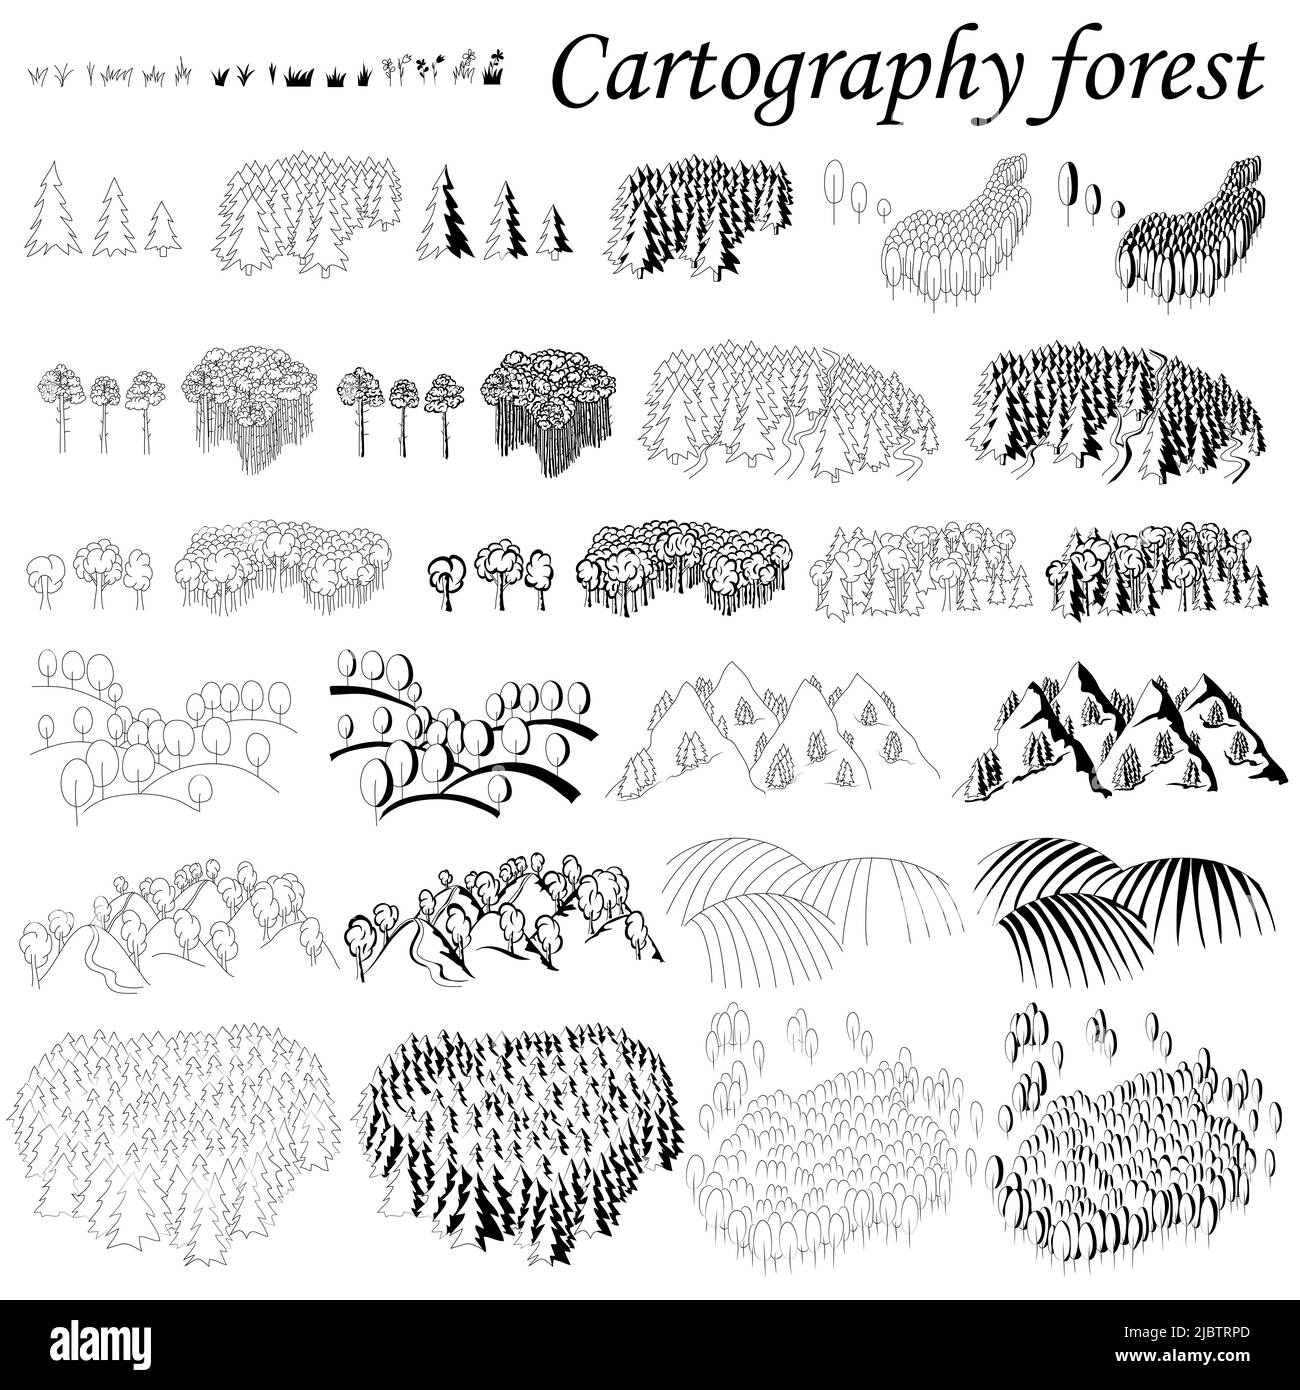 Kartographie. Elemente für die Erstellung von Karten Fantasie oder Spiele. Wald und Berge mit Wäldern. Schwarz-weiß handgezeichnetes Set. Stock Vektor